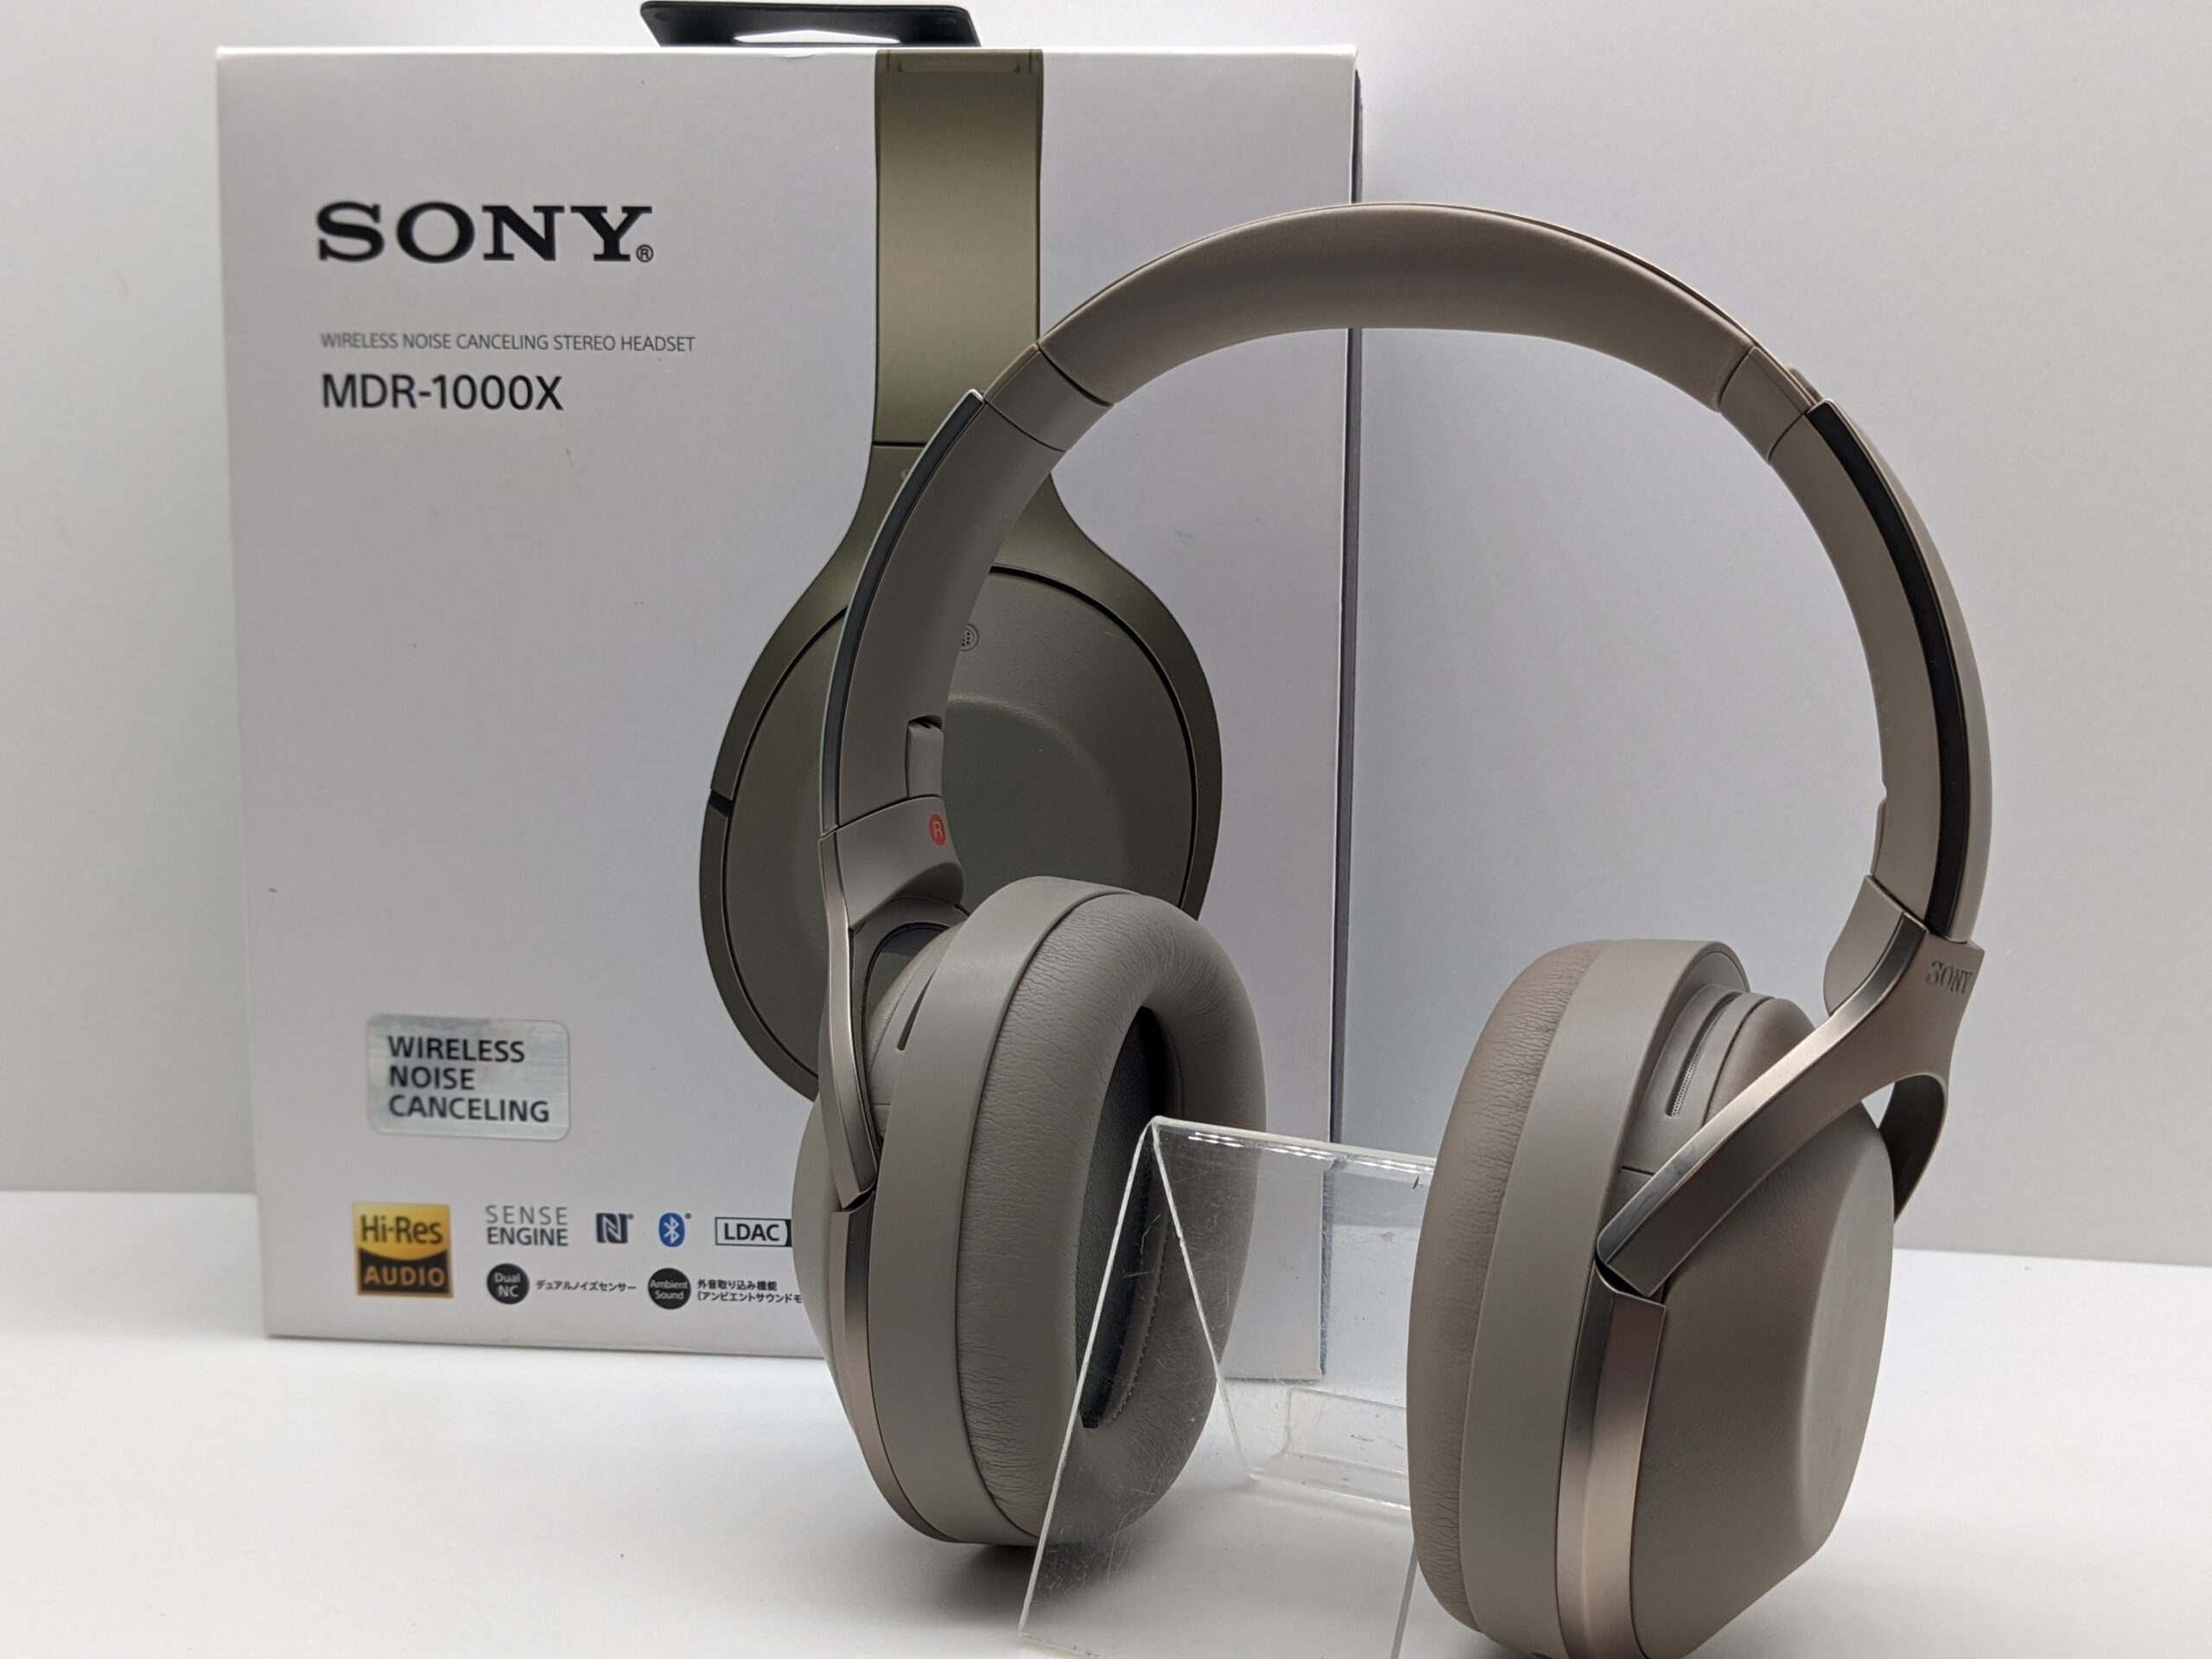 ソニー SONY ワイヤレスノイズキャンセリングヘッドホン MDR-1000X